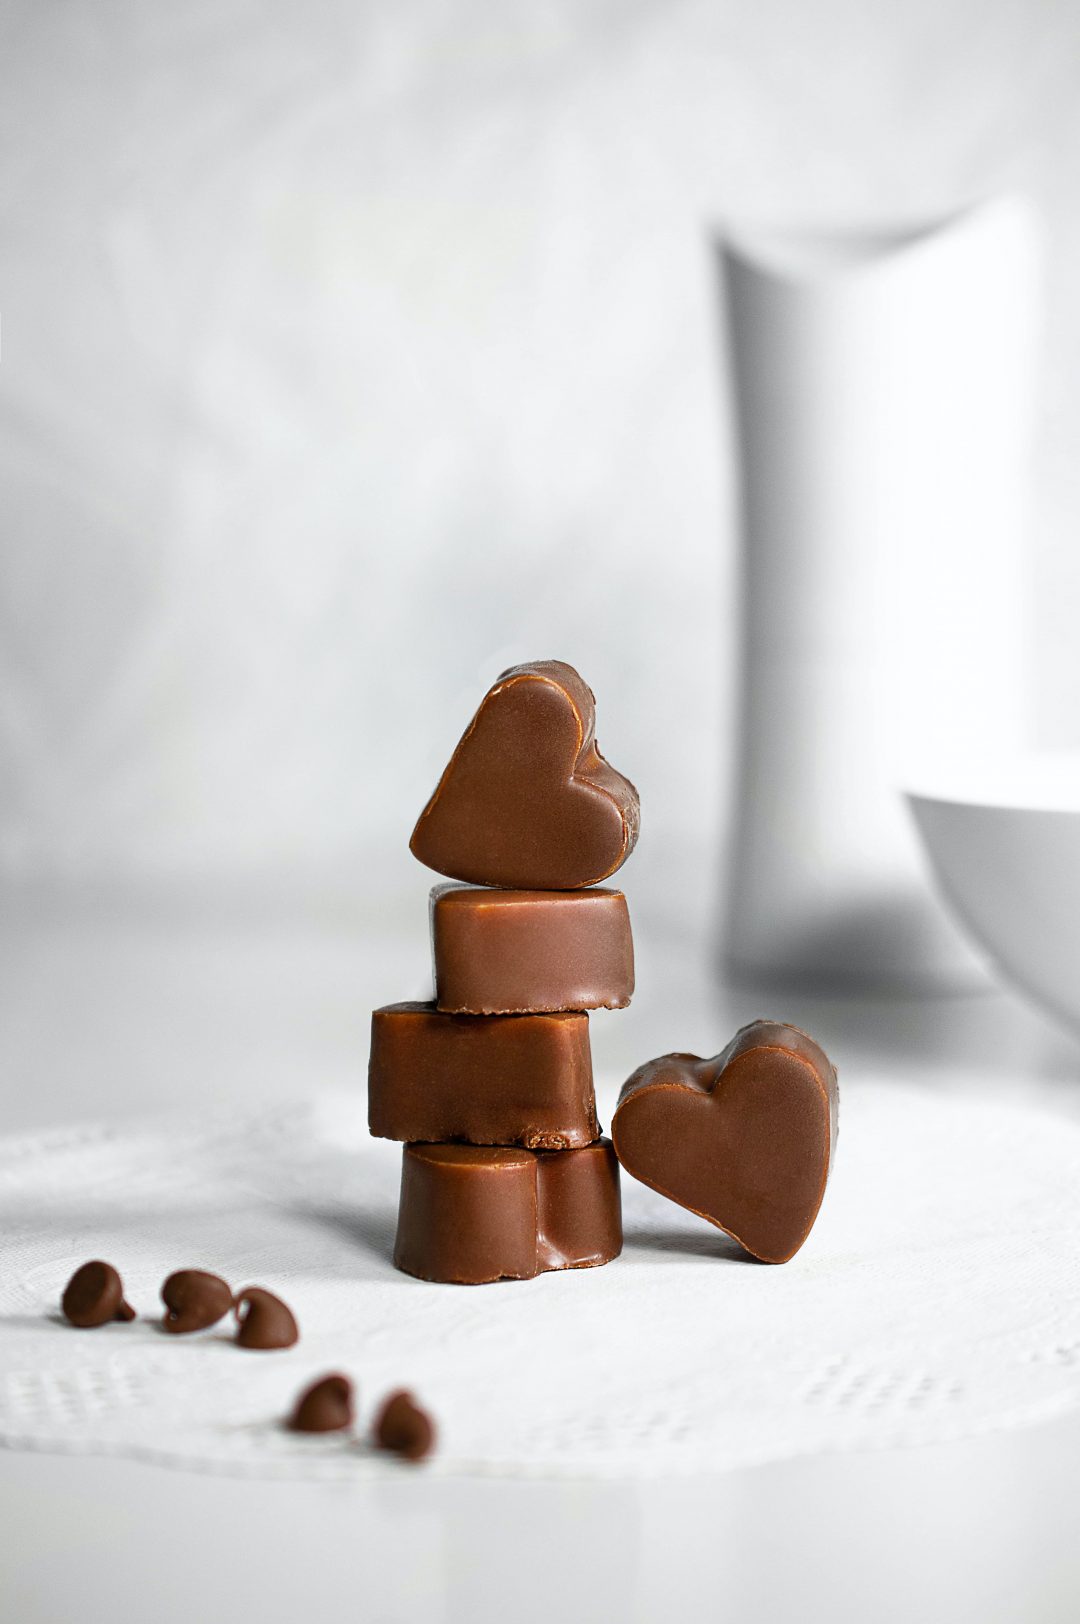 Schokolade ohne Zucker aus dem Thermomix® - Photo by Sara Cervera on Unsplash